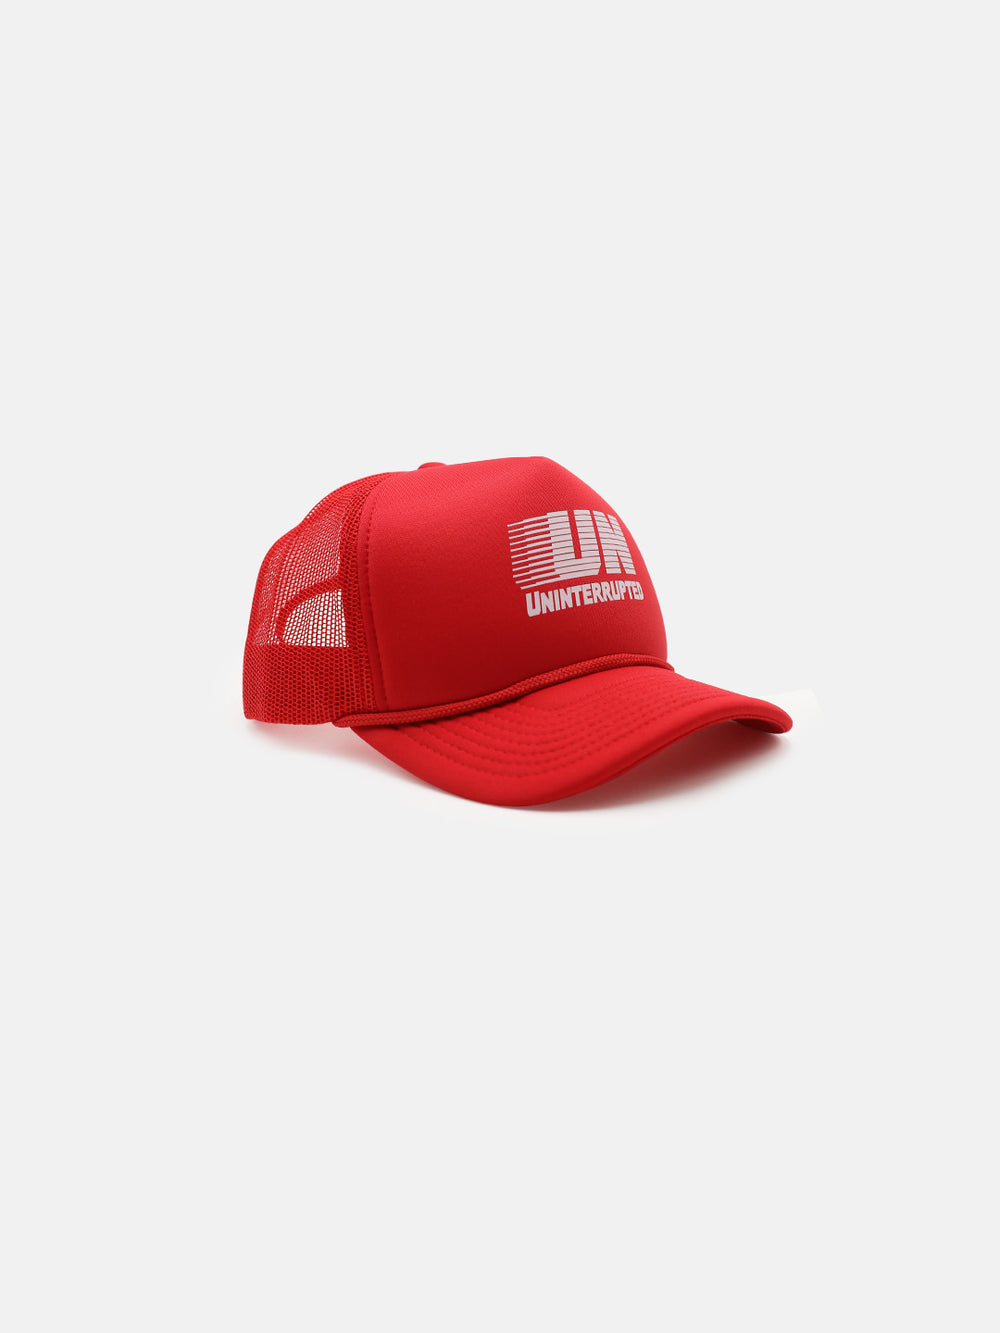 UN Motion Snapback Trucker Hat Red - Side